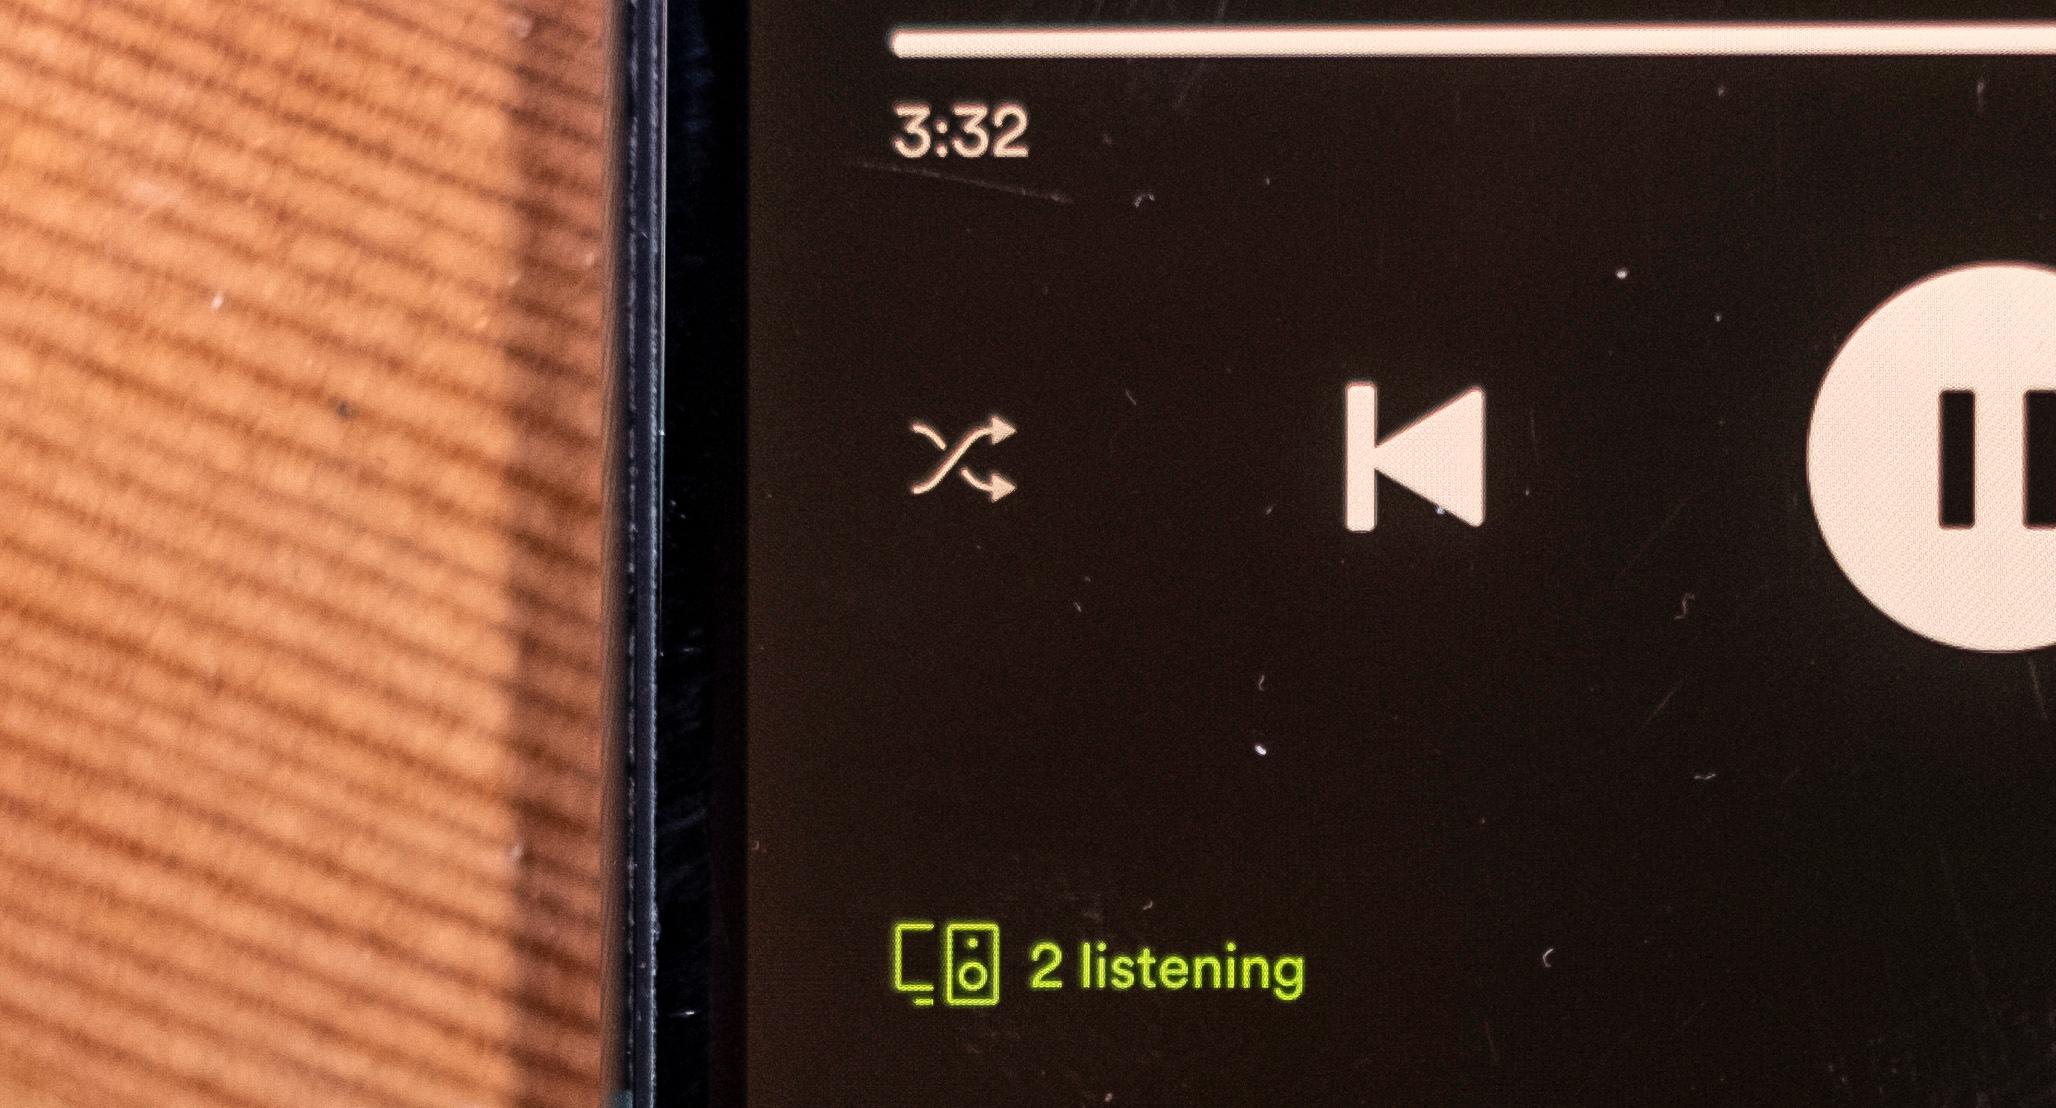 Slik ser det ut når to stykker lytter samtidig i Spotify-appen.